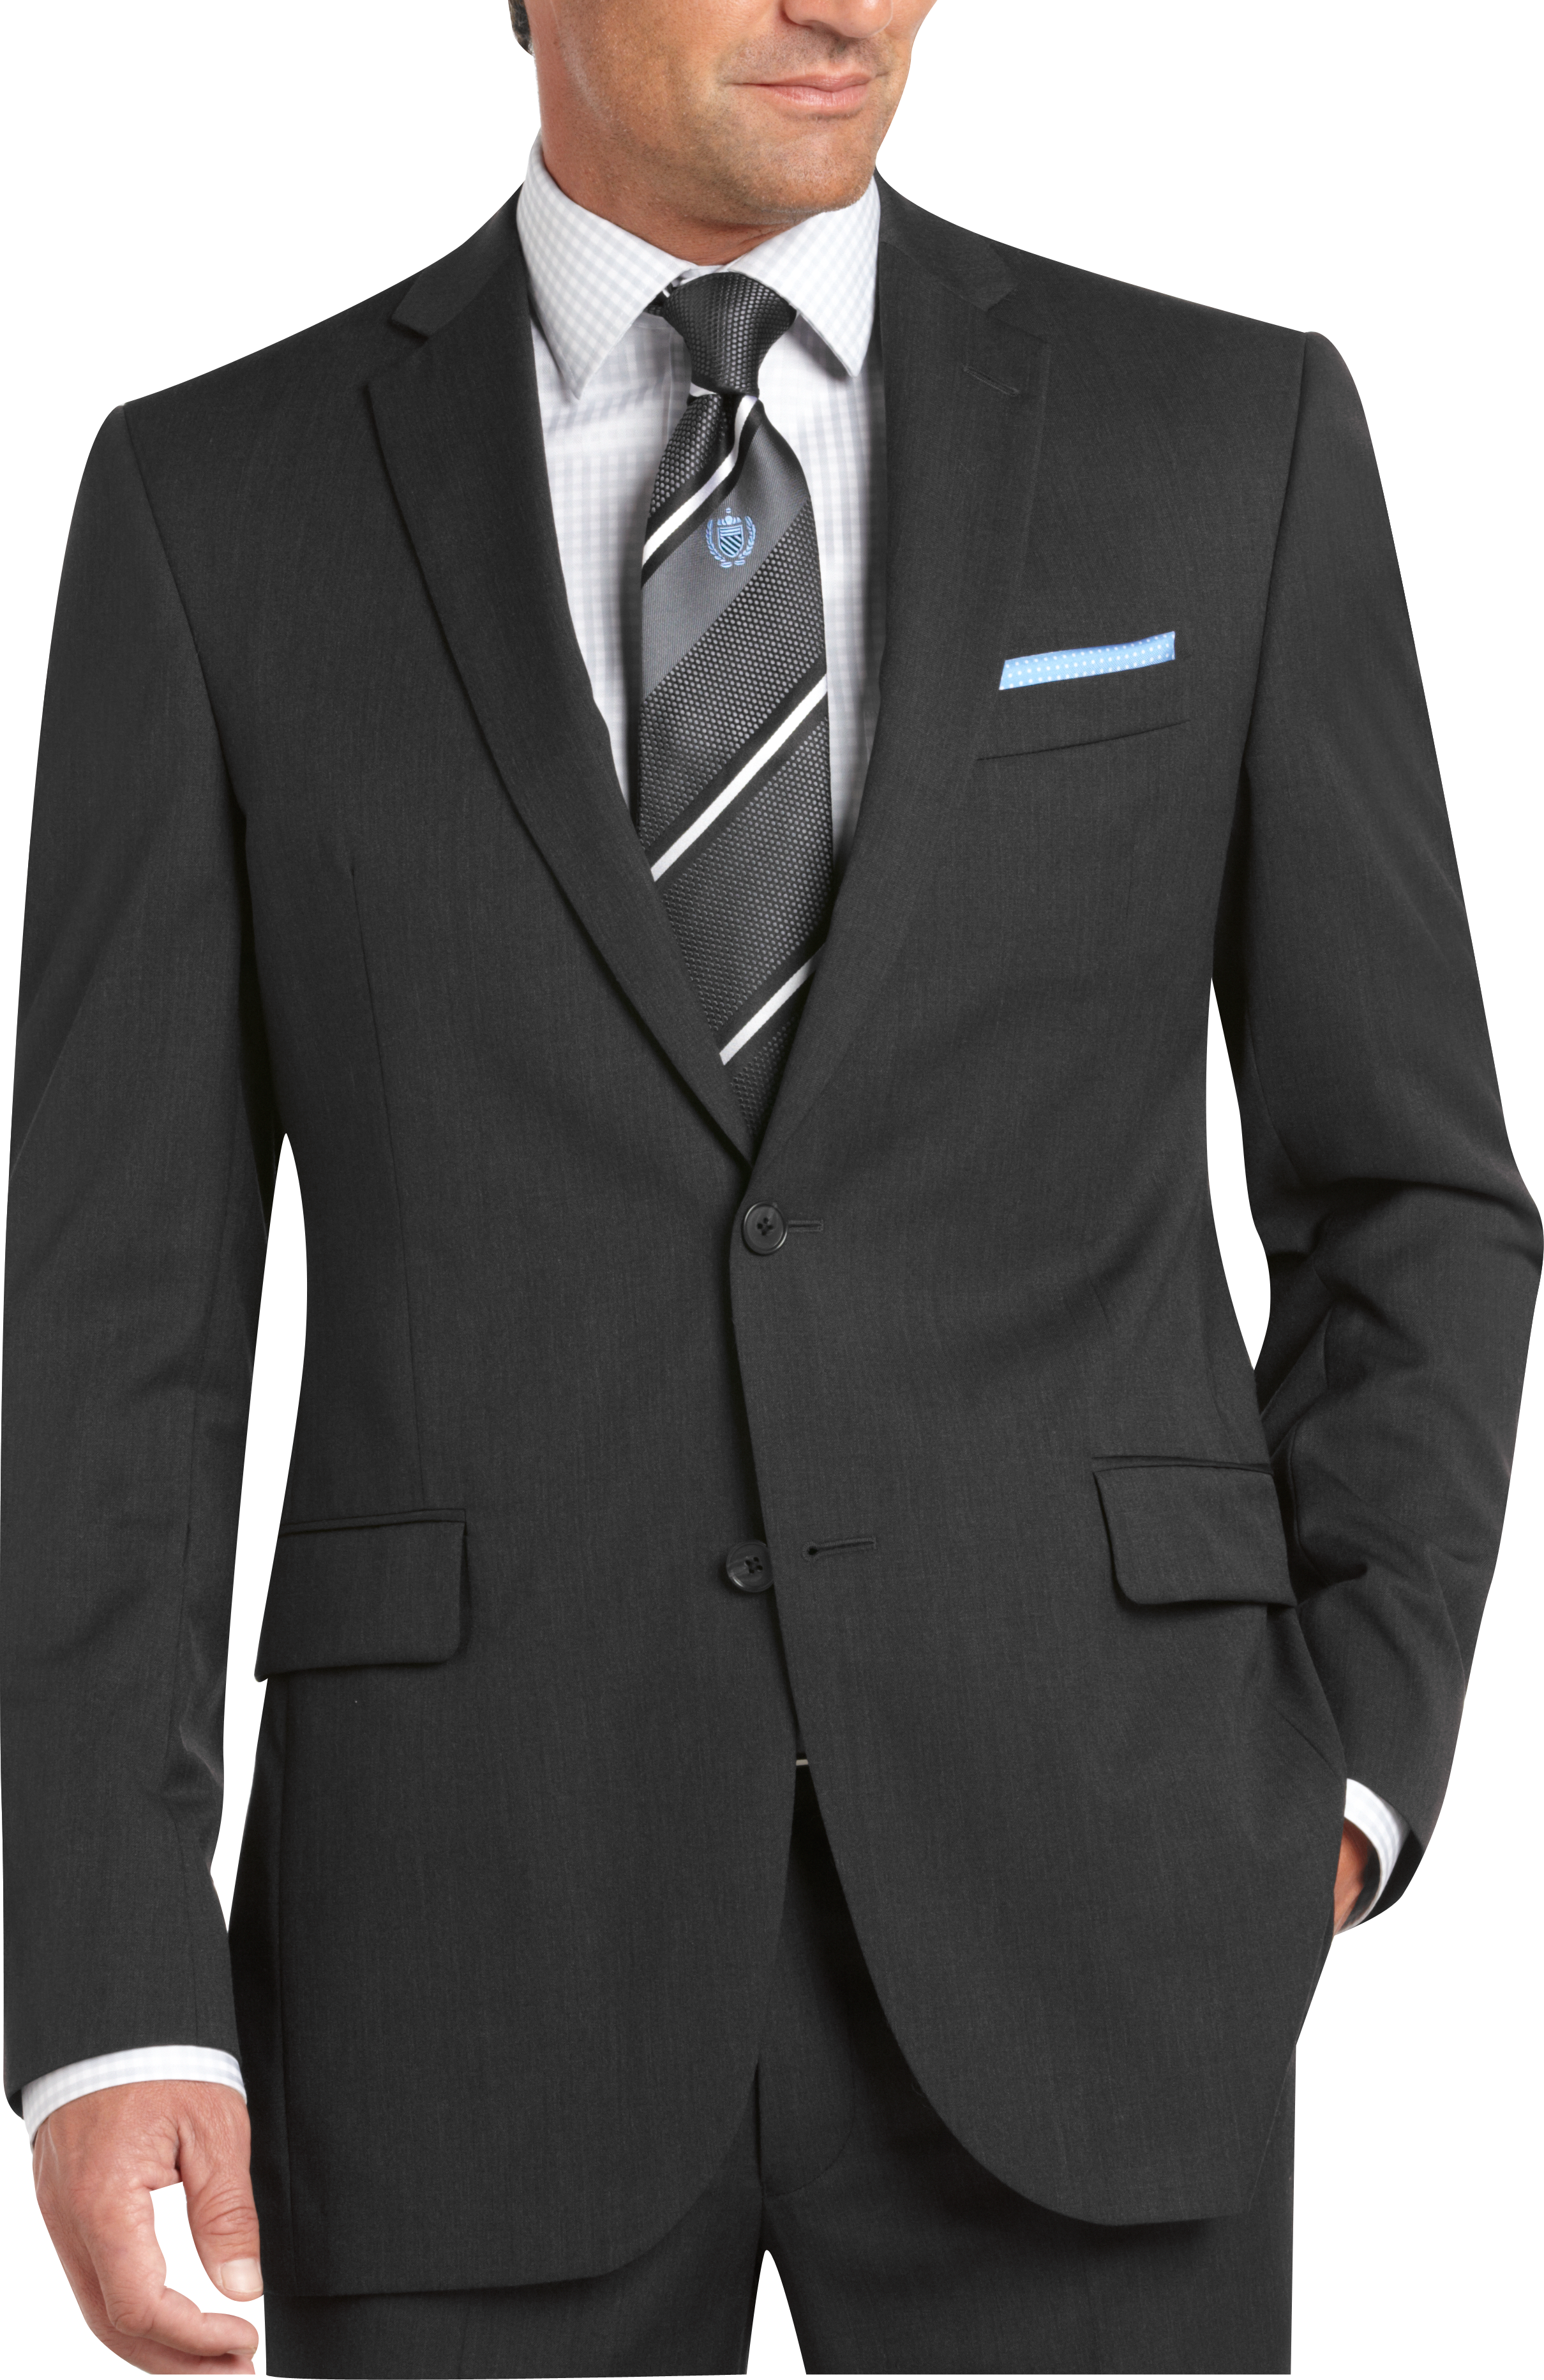 Jack Victor Select Charcoal Slim Fit Suit - Men's Sale | Men's Wearhouse